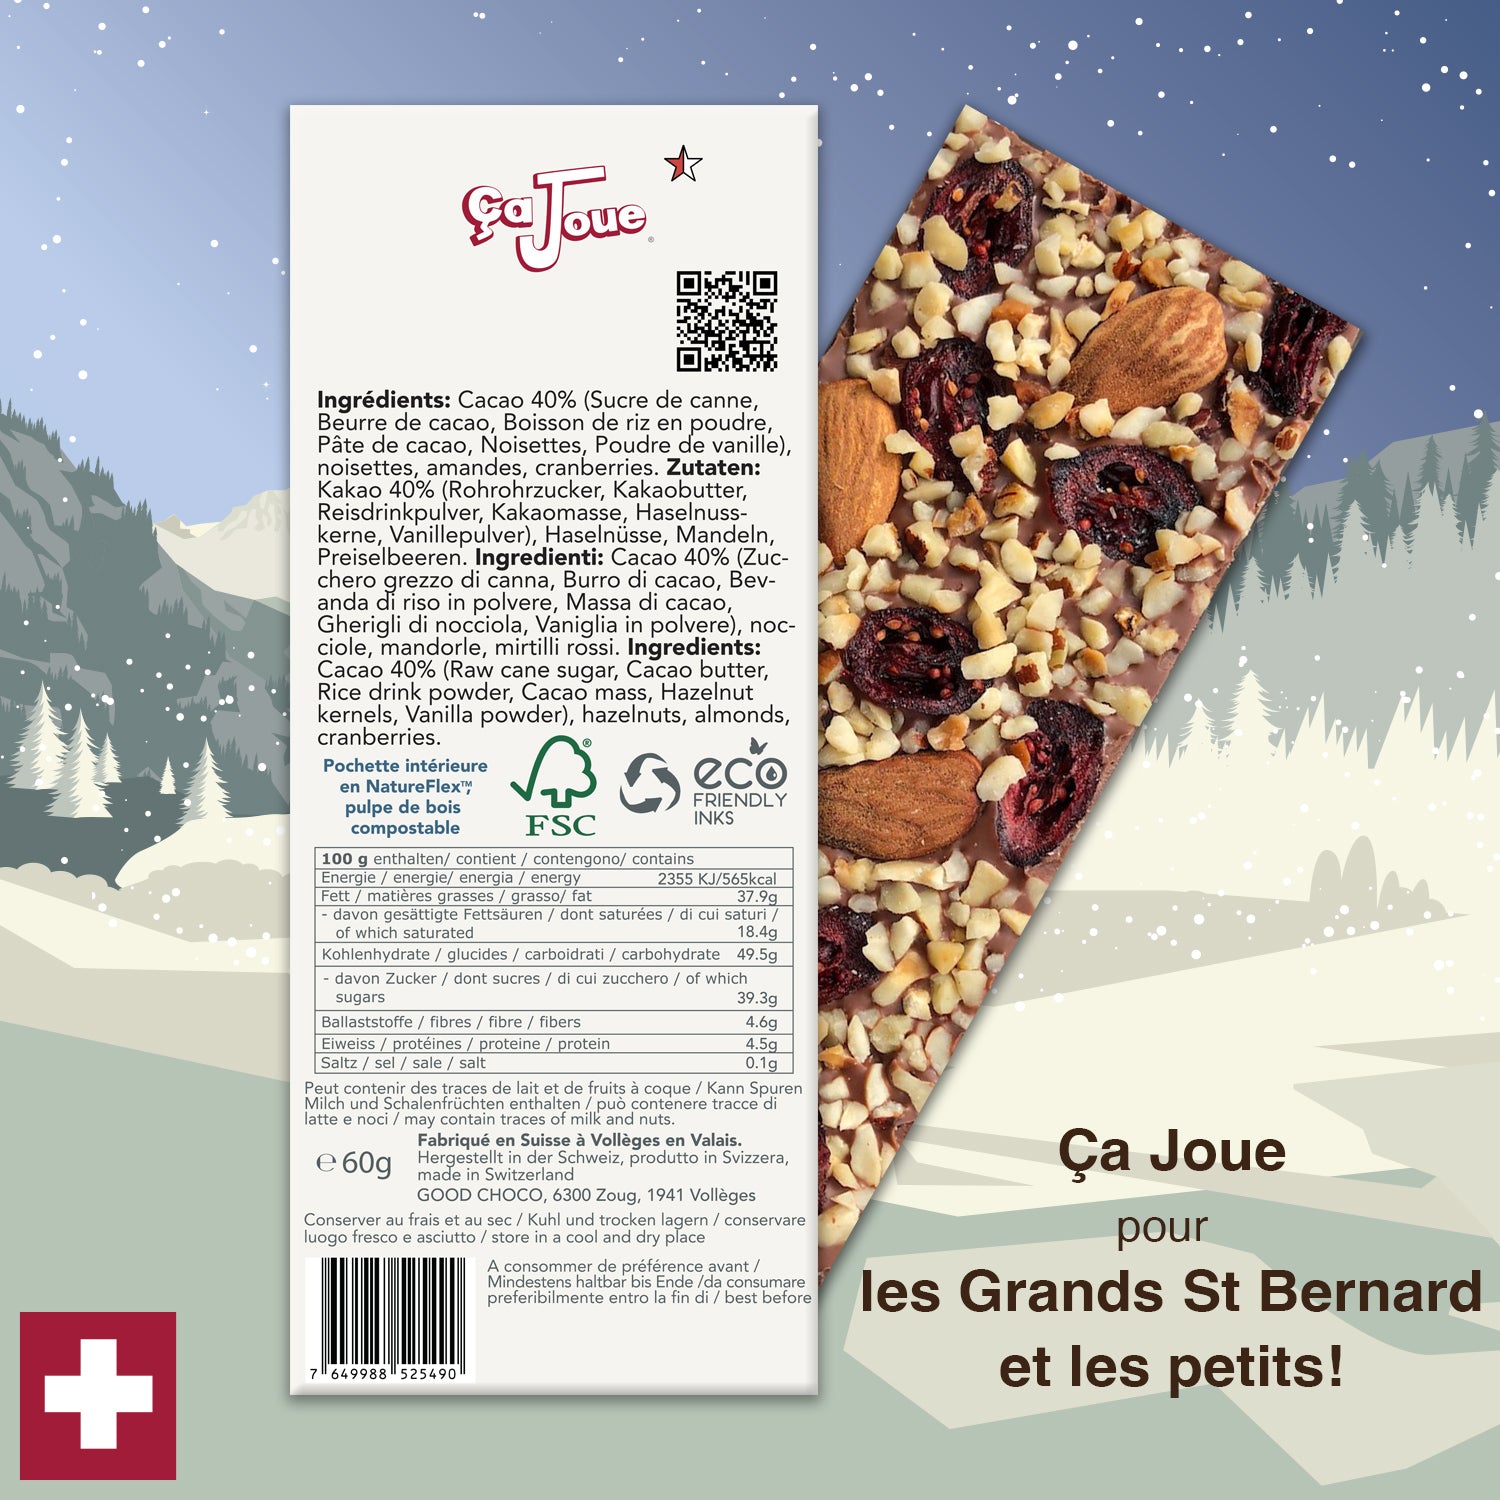 Ça Joue pour pour les petits St Bernards (Ref-BV5) Chocolat du Val de Bagnes